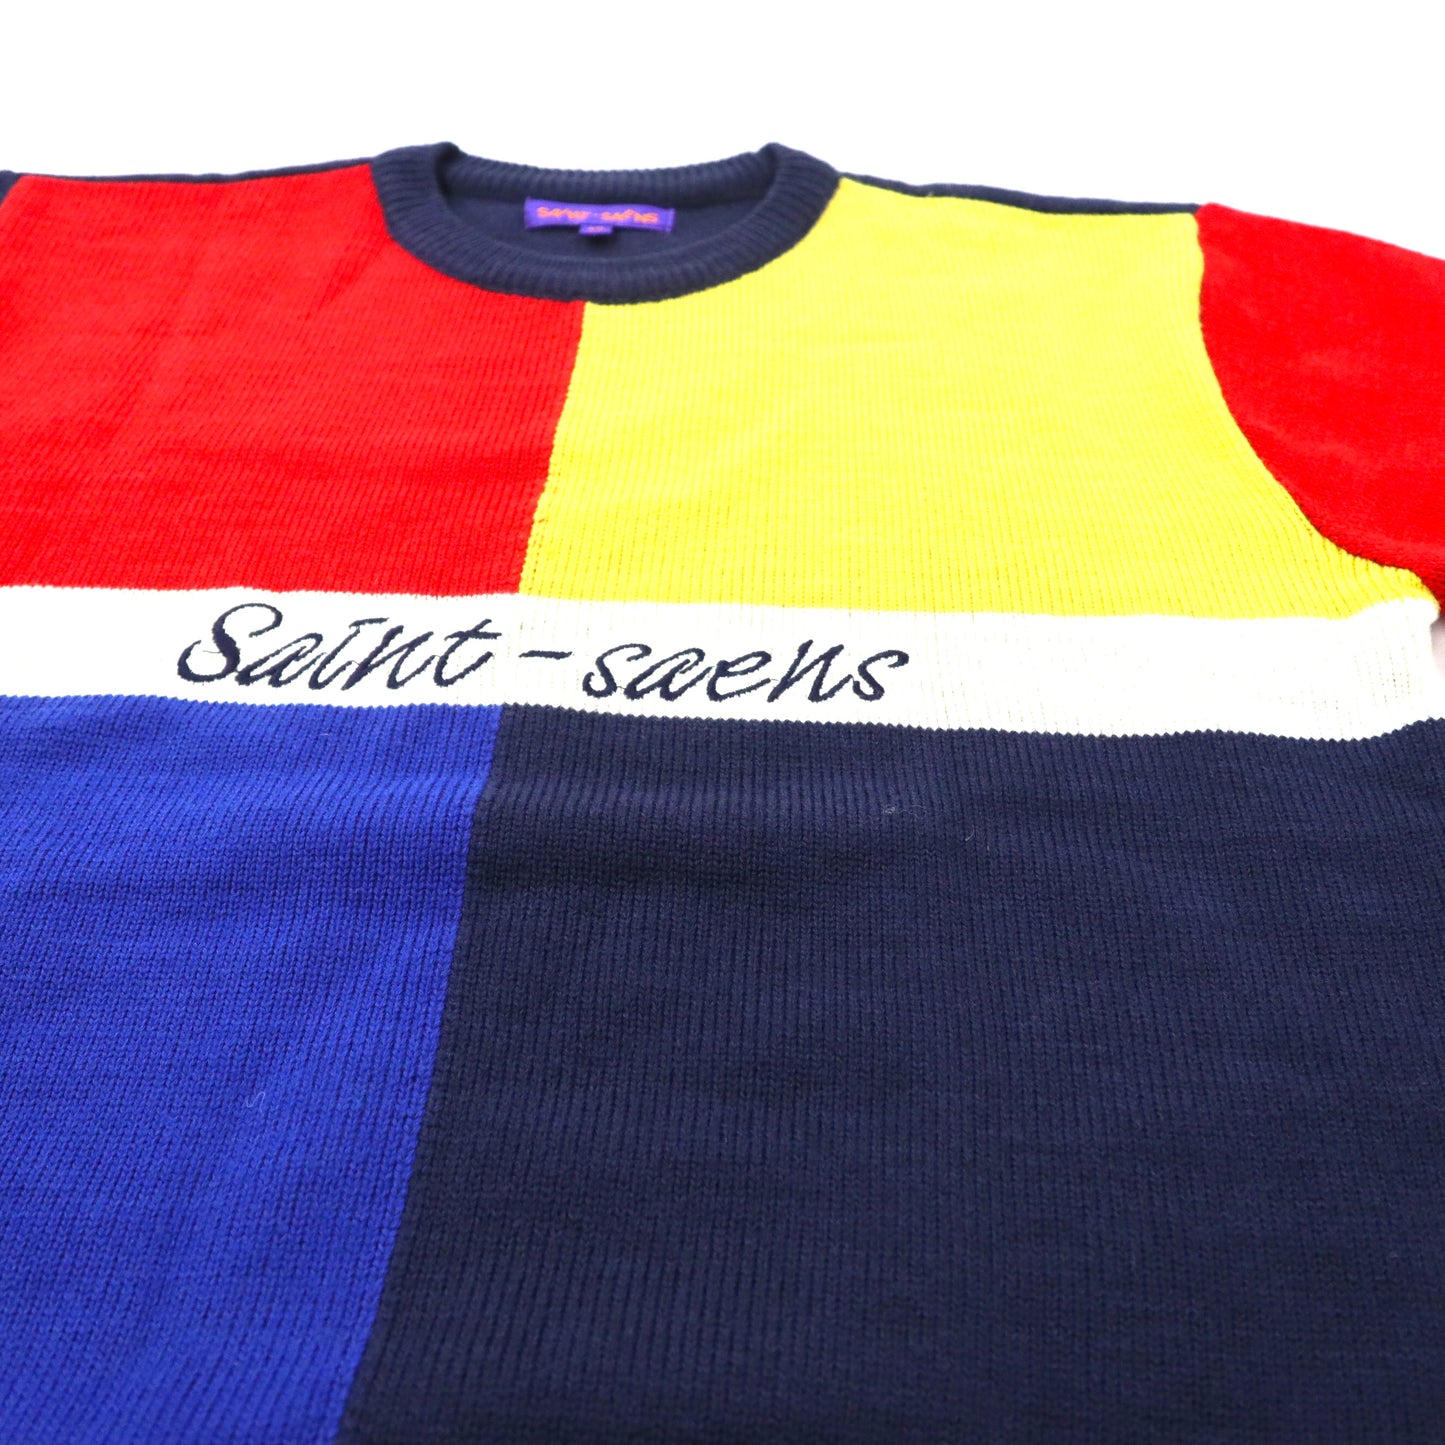 SAINT-SAENS カラーブロックニット セーター 95 マルチカラー コットン ロゴ刺繍 90年代